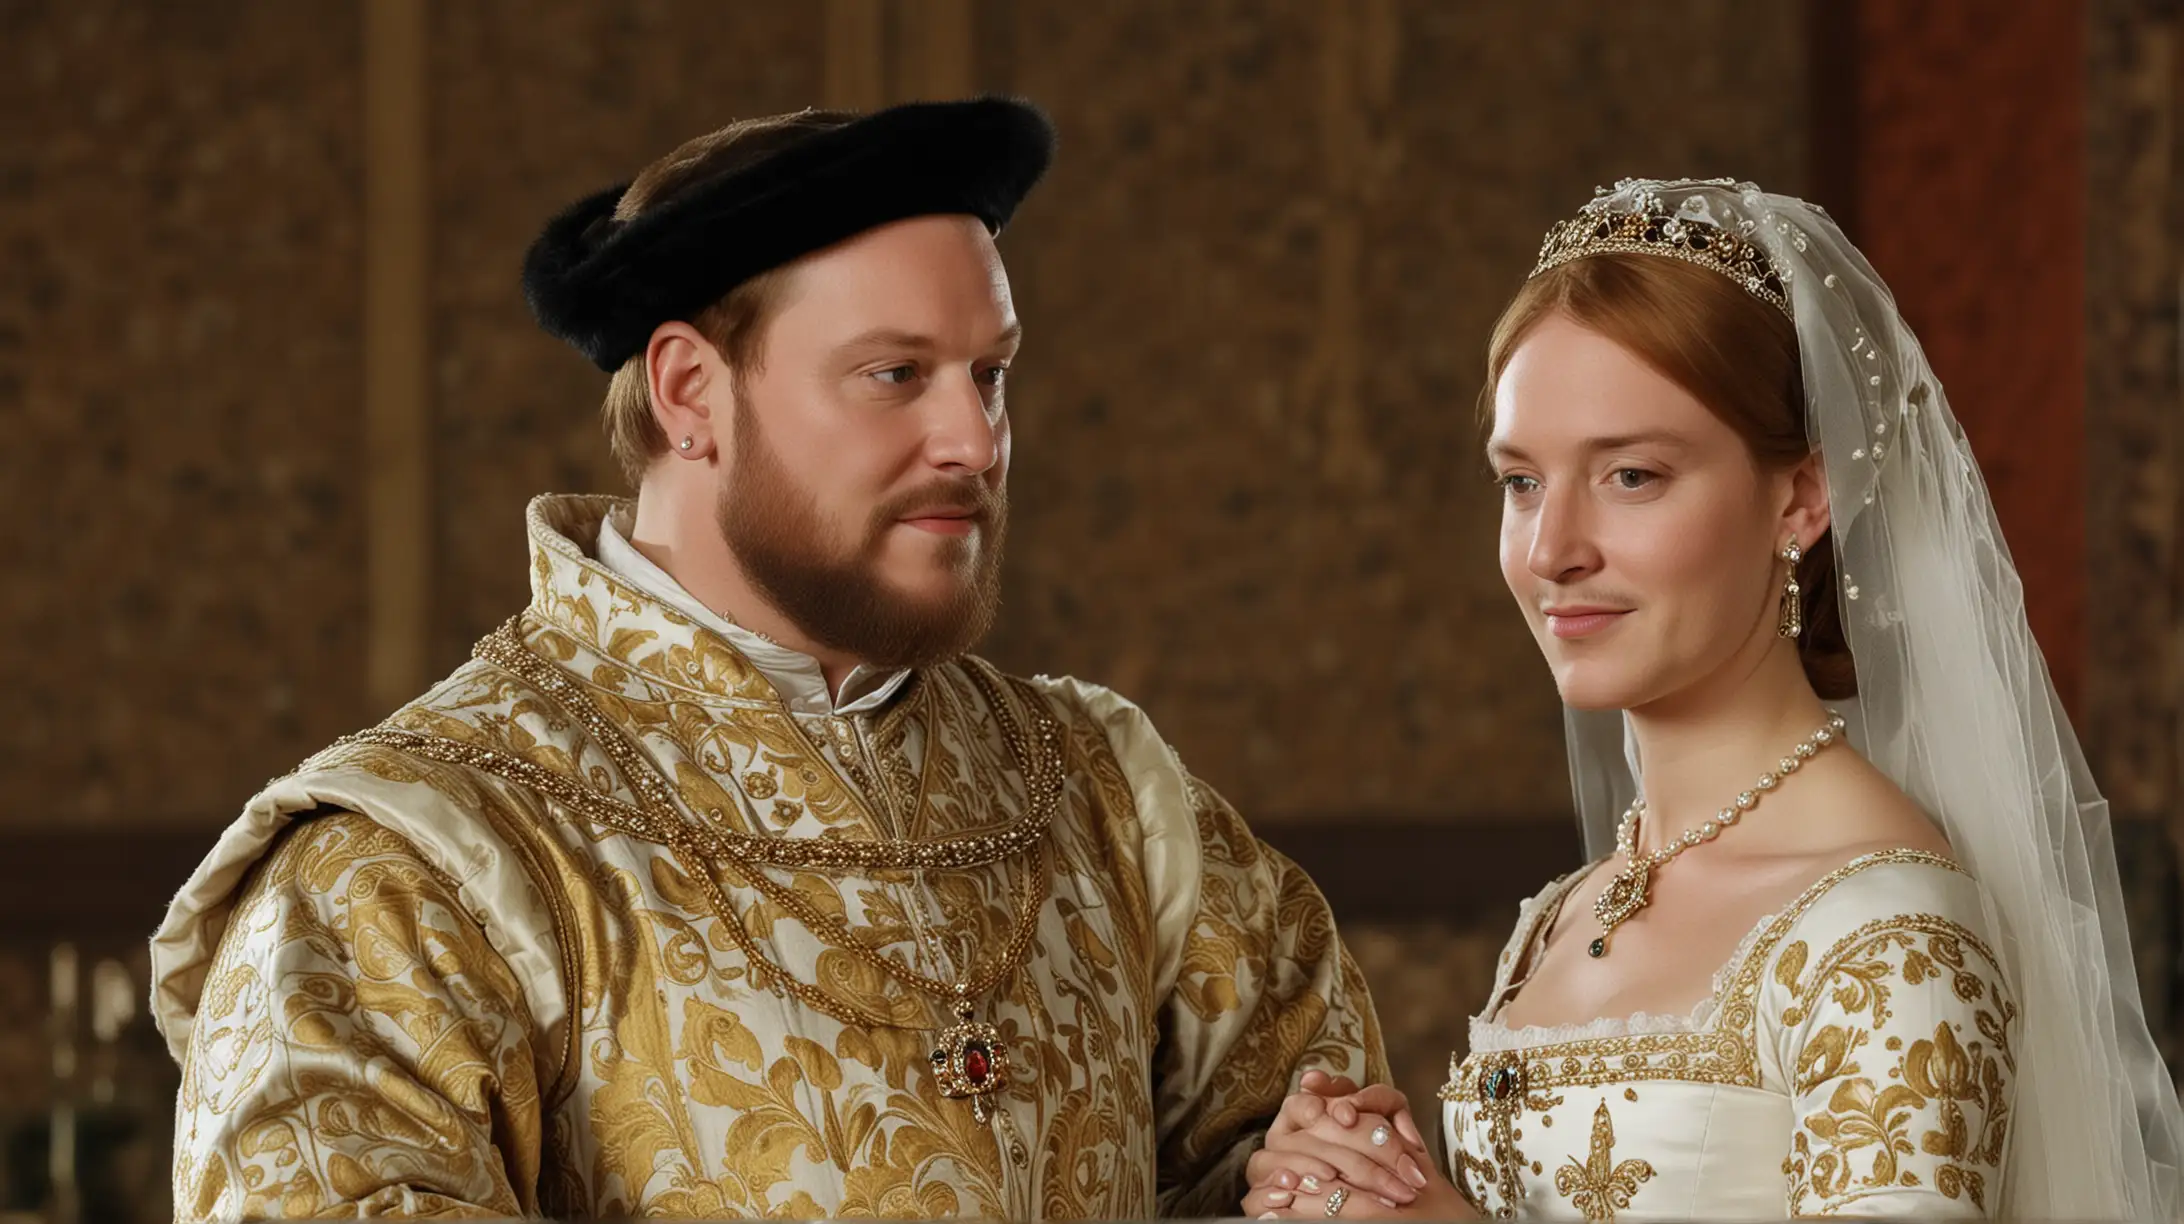 rey Enrique VIIIA LOS 45 años  de edad se casa con catalina howar de 18 años dé la dinastía tudor boda en la realeza